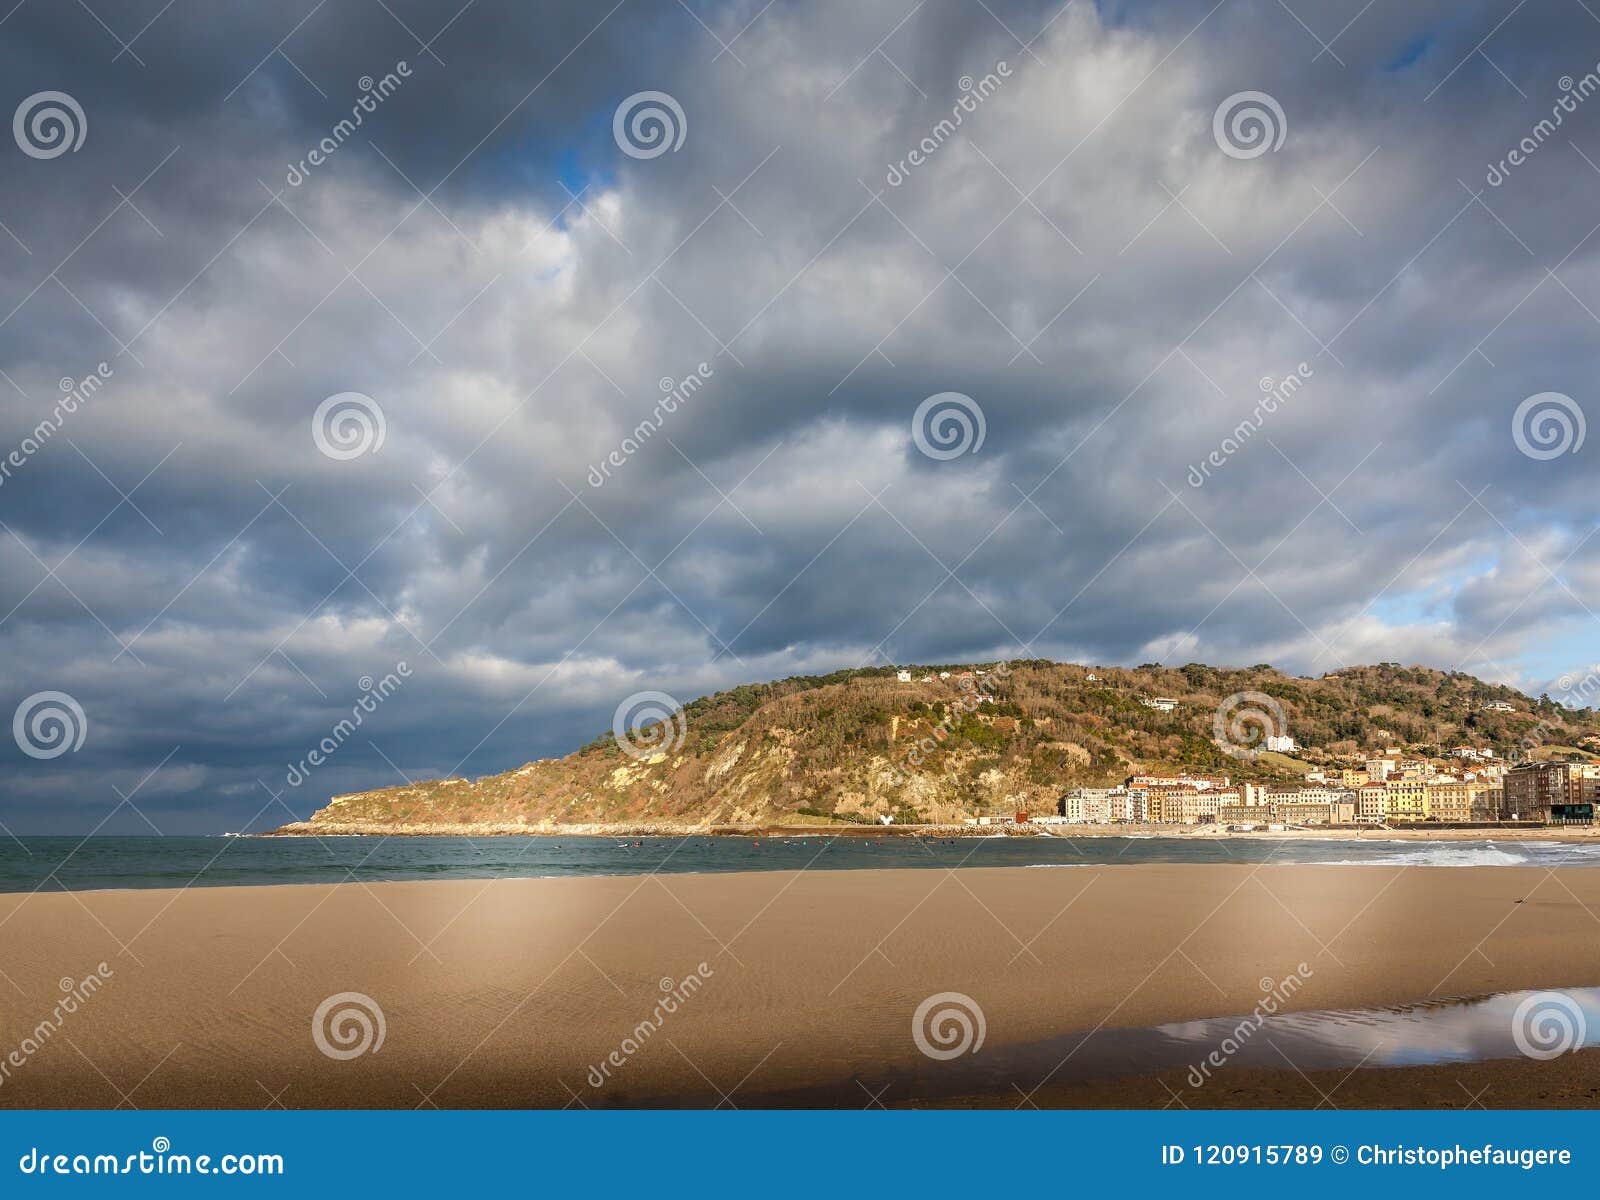 mount ulia above zurriola beach in donostia san sebastian